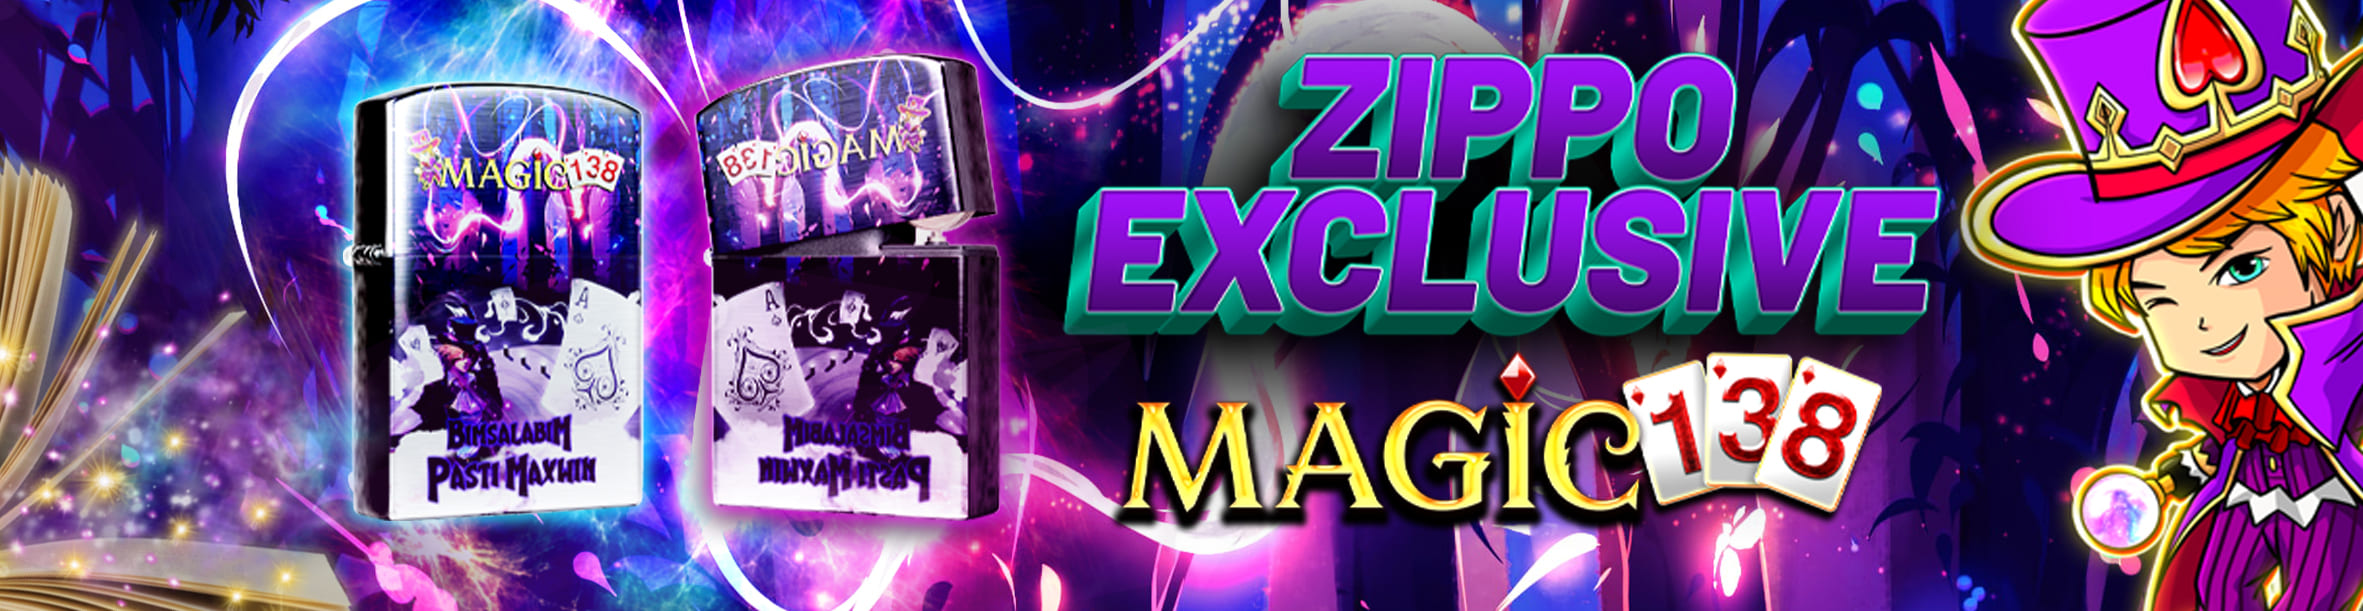 Zippo Exclusive Magic138